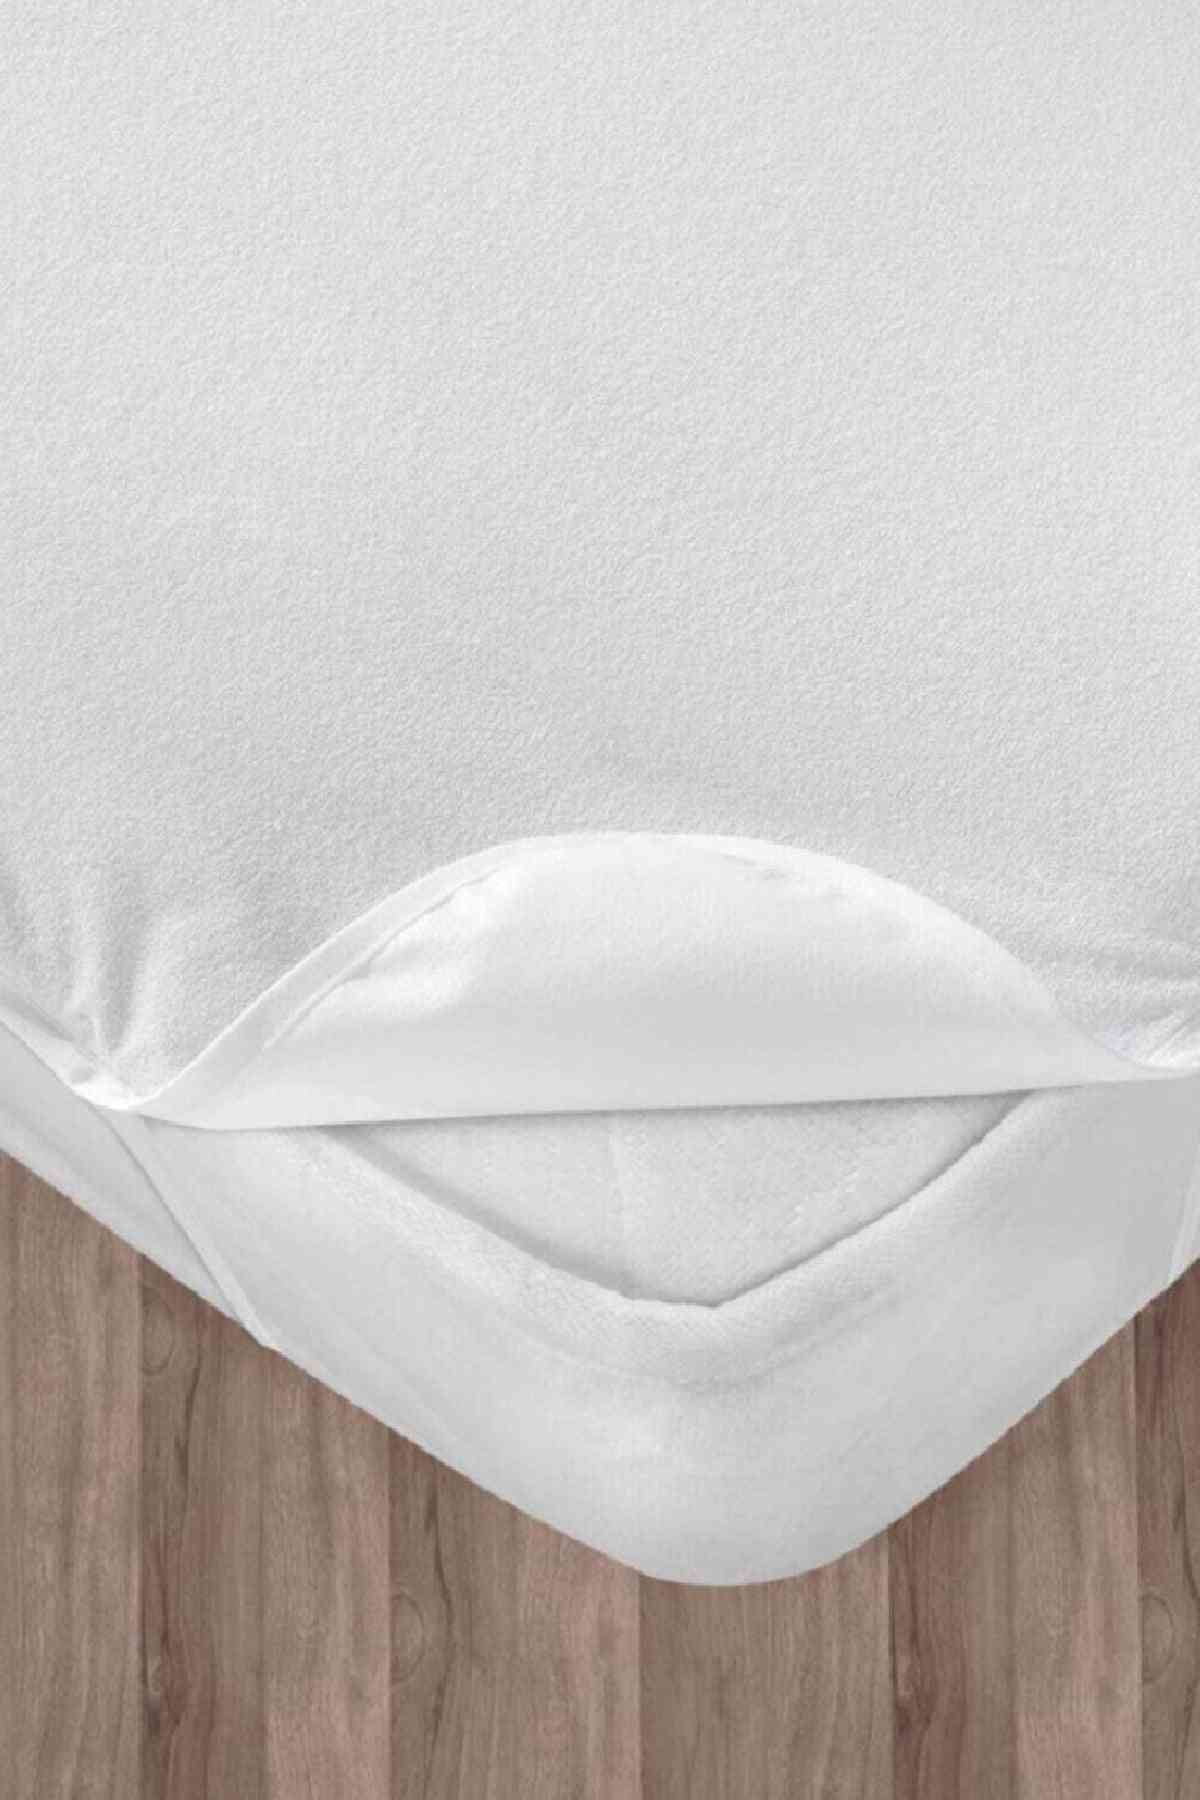 Babaágy kiságy ágynemű matracvédő, lepedő sarok elasztikus, vízálló, csecsemő cucc